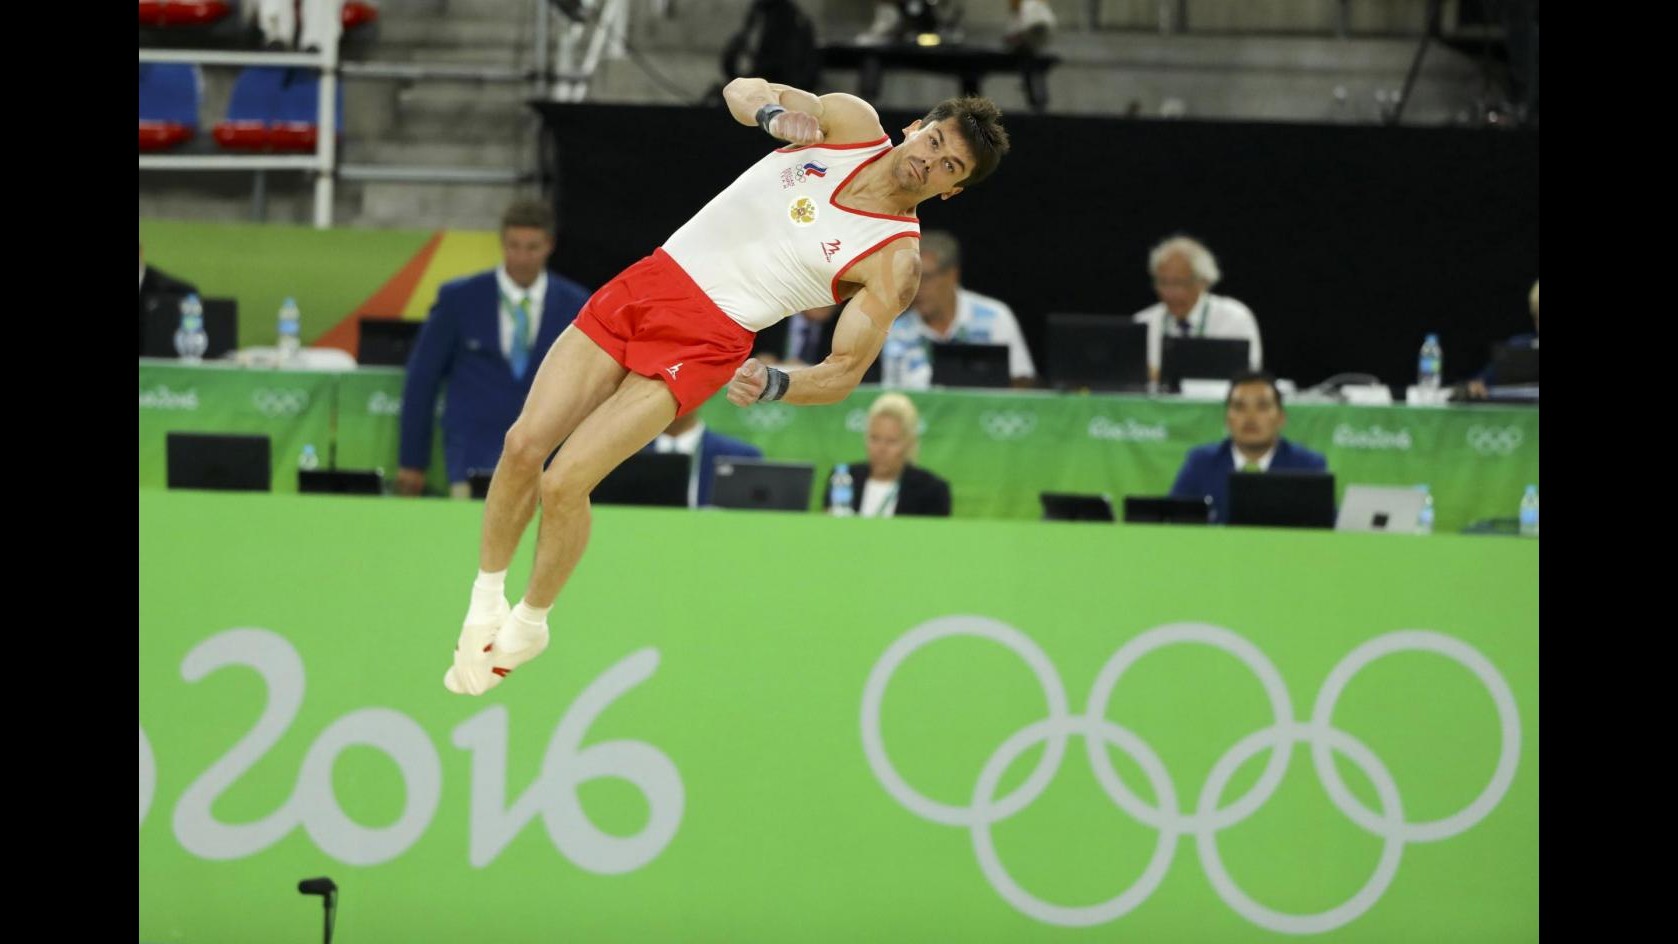 FOTO Rio 2016: gli atleti in volo